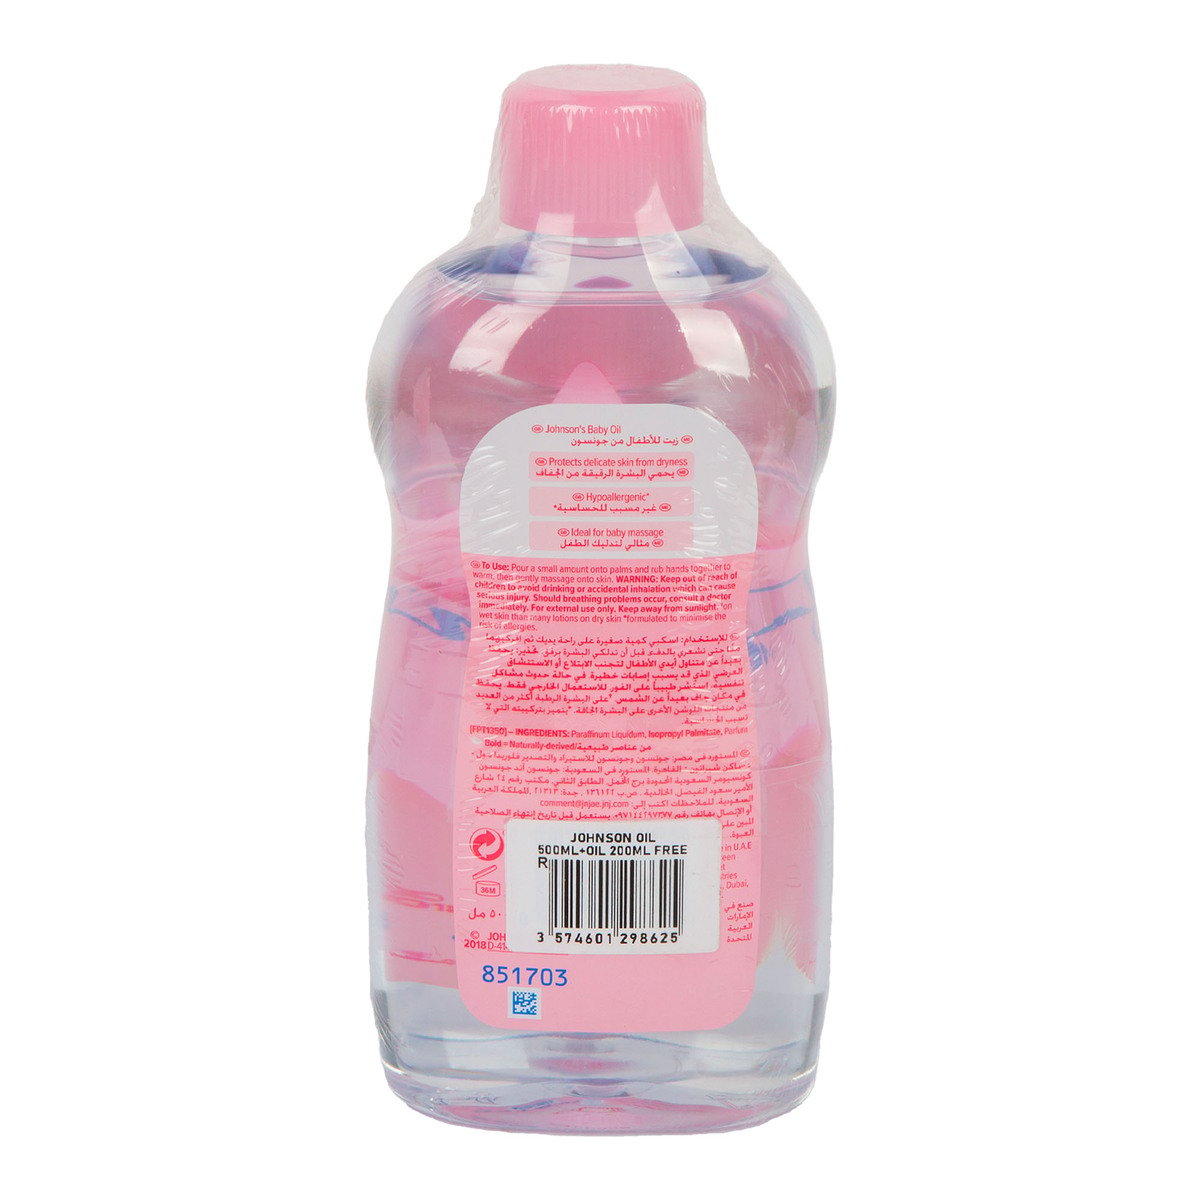 Johnson's Baby Oil Value Pack 500 ml + 200 ml